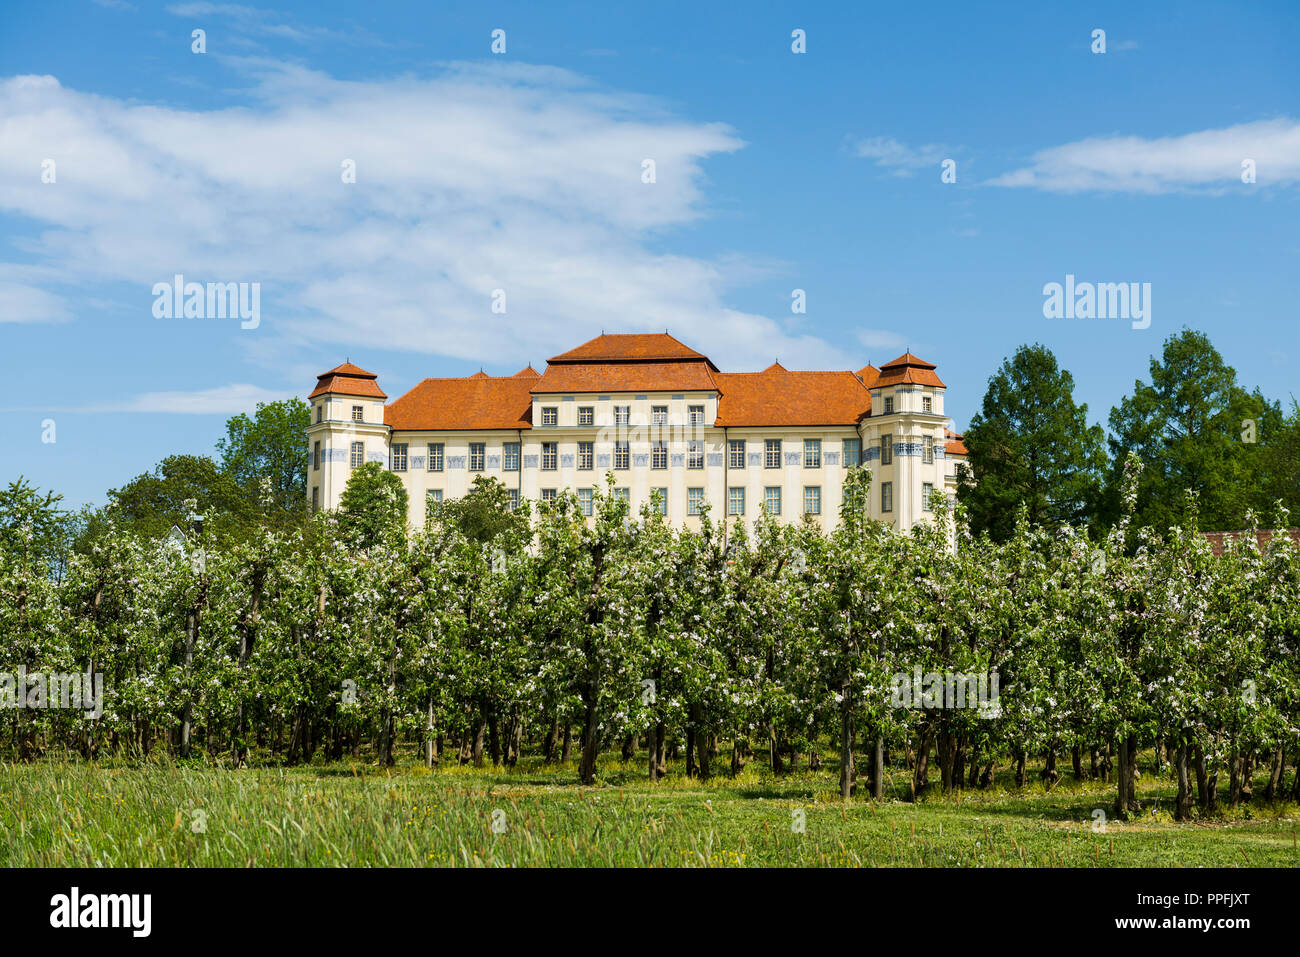 Nuovo castello e la fioritura degli alberi da frutto, Tettnang, Alta Svevia, la regione del Lago di Costanza, Baden-Württemberg, Germania Foto Stock